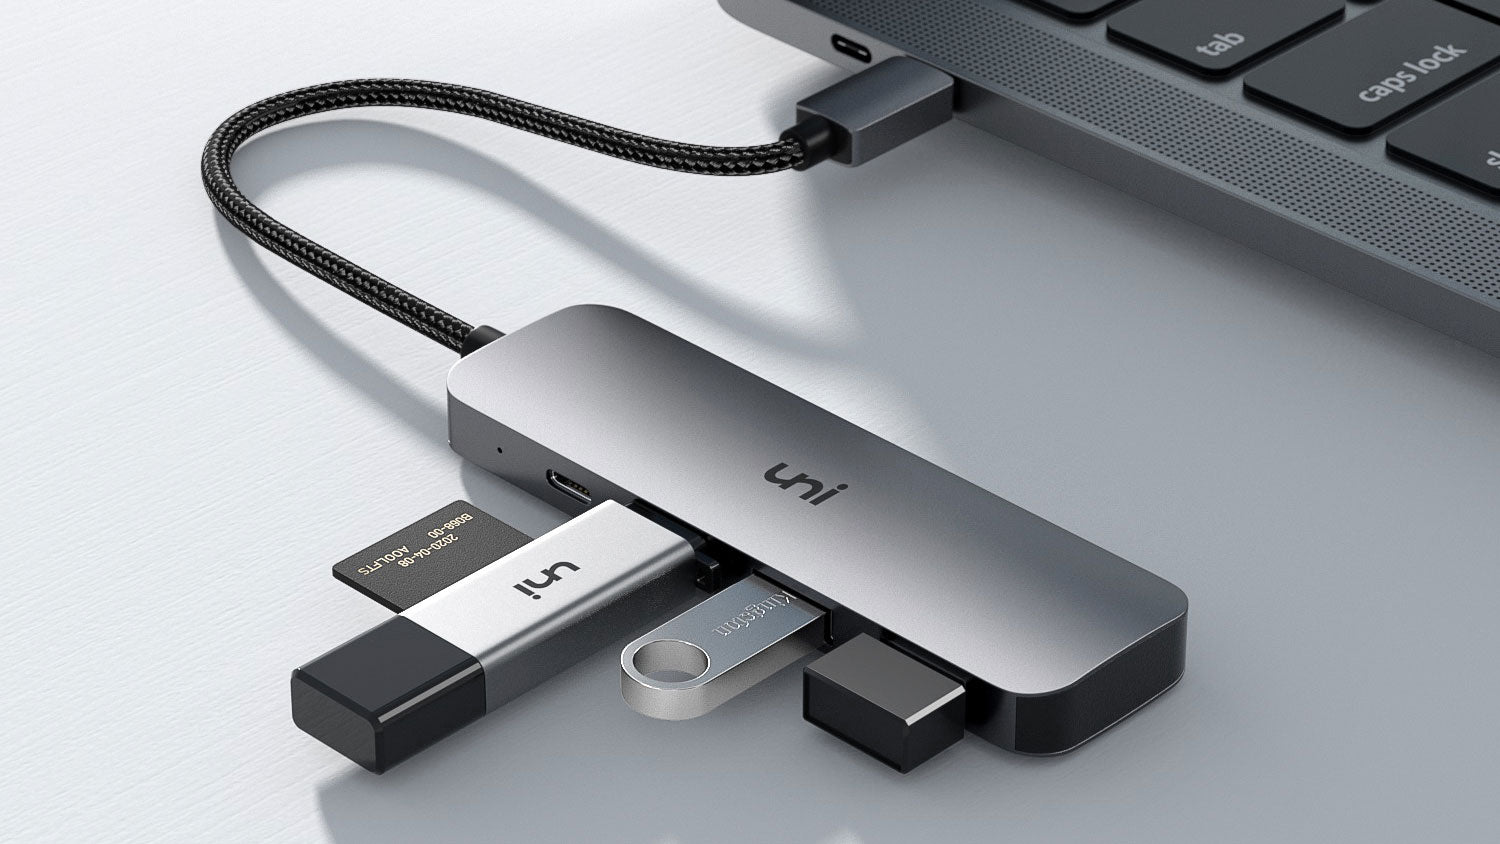 3 * USB 3.0 Ports